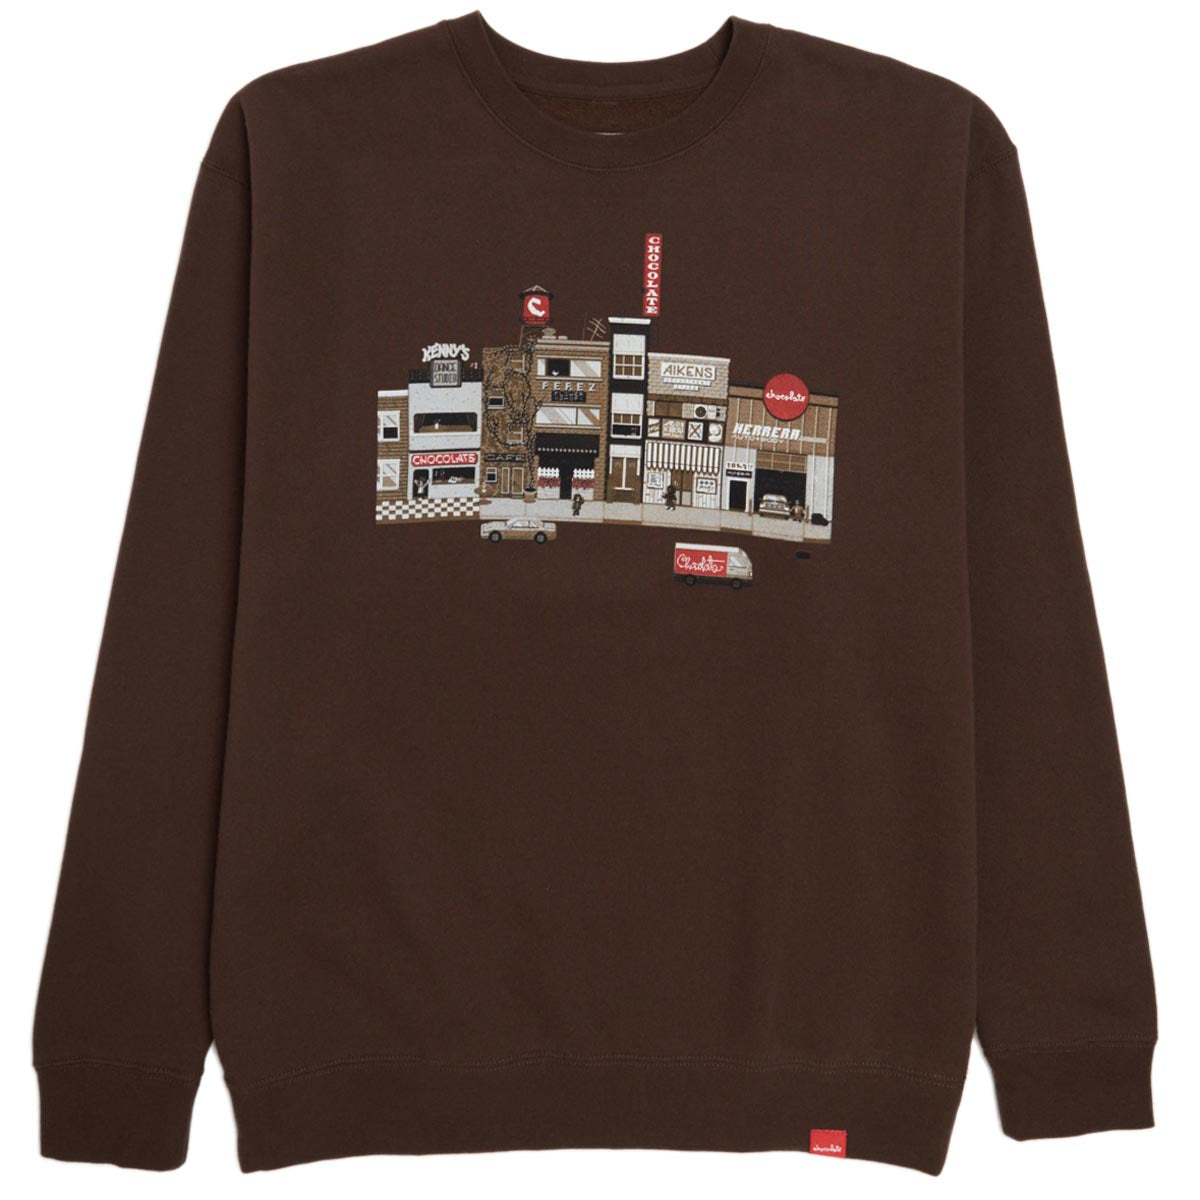 Chocolate Pixel City Crew Fleece Sweatshirt - Brown image 1